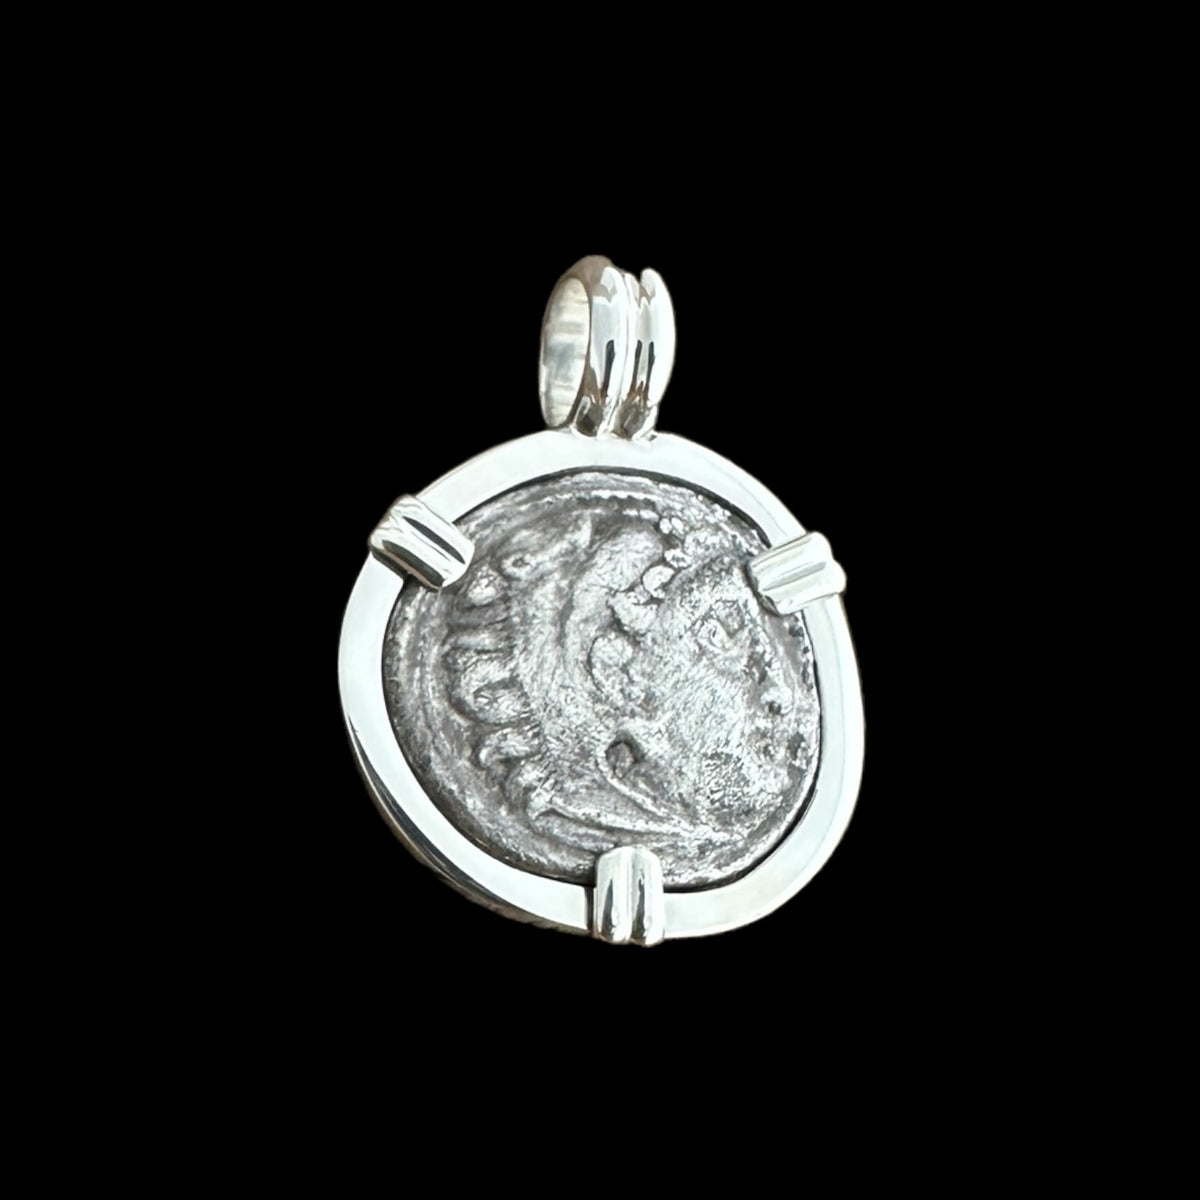 Alexander III Drachm set in Sterling Silver Pendant – MFST